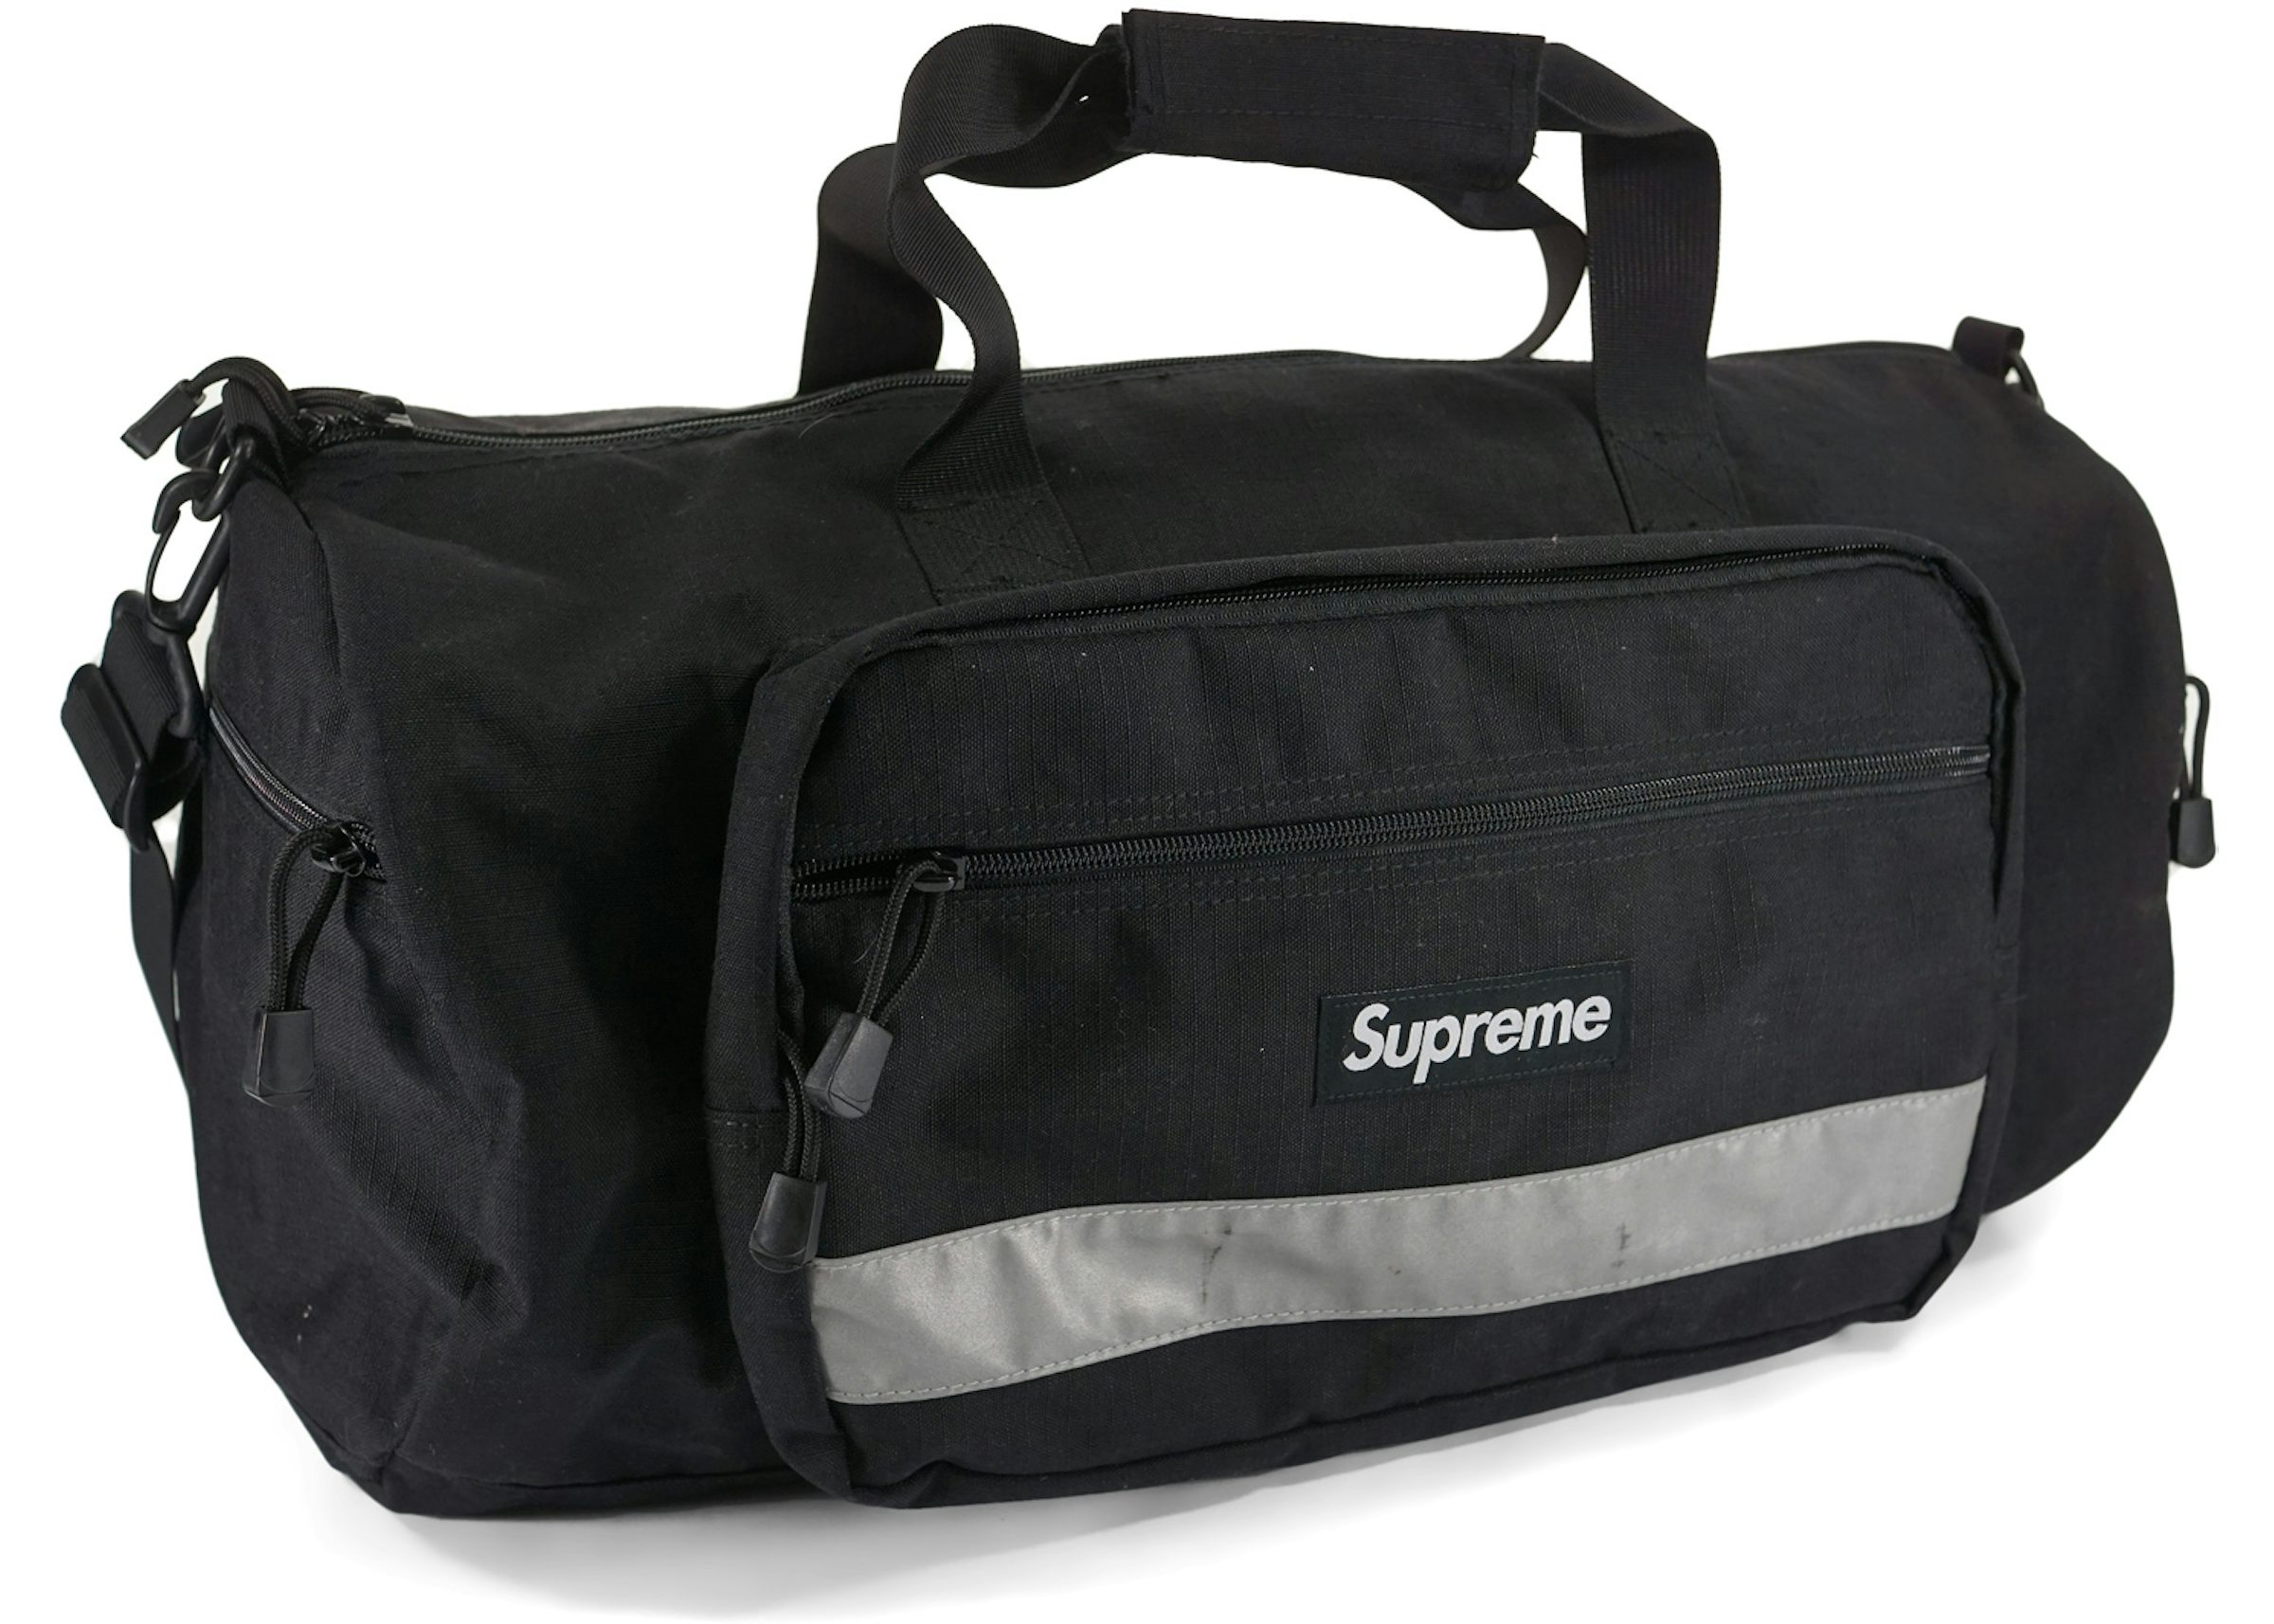 Supreme Hi Vis Duffle Bag Black for Women